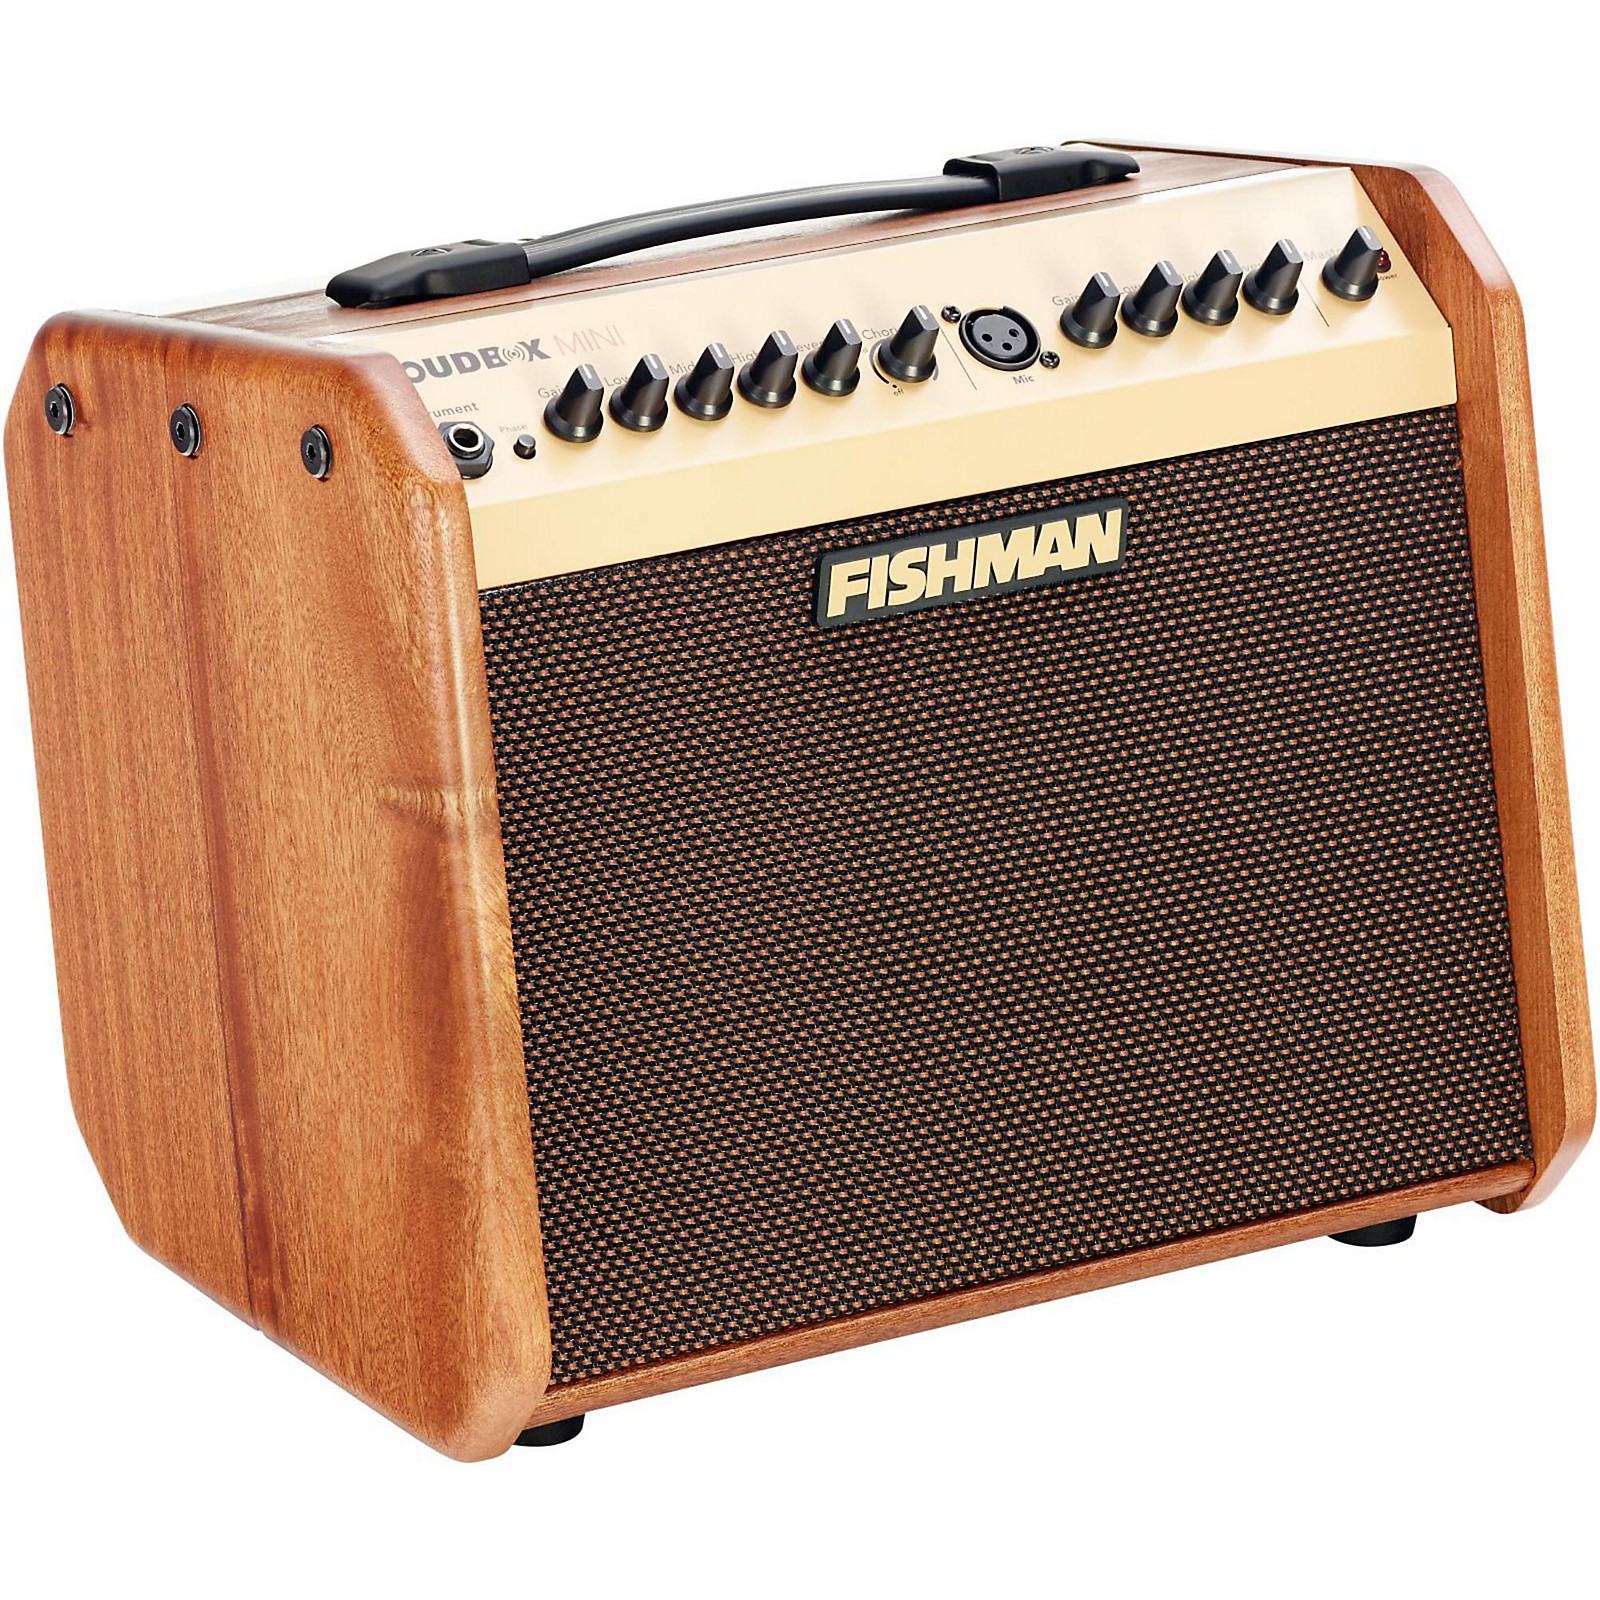 Fishman Limited Edition Mahogany Loudbox Mini PRO | Musician's Friend